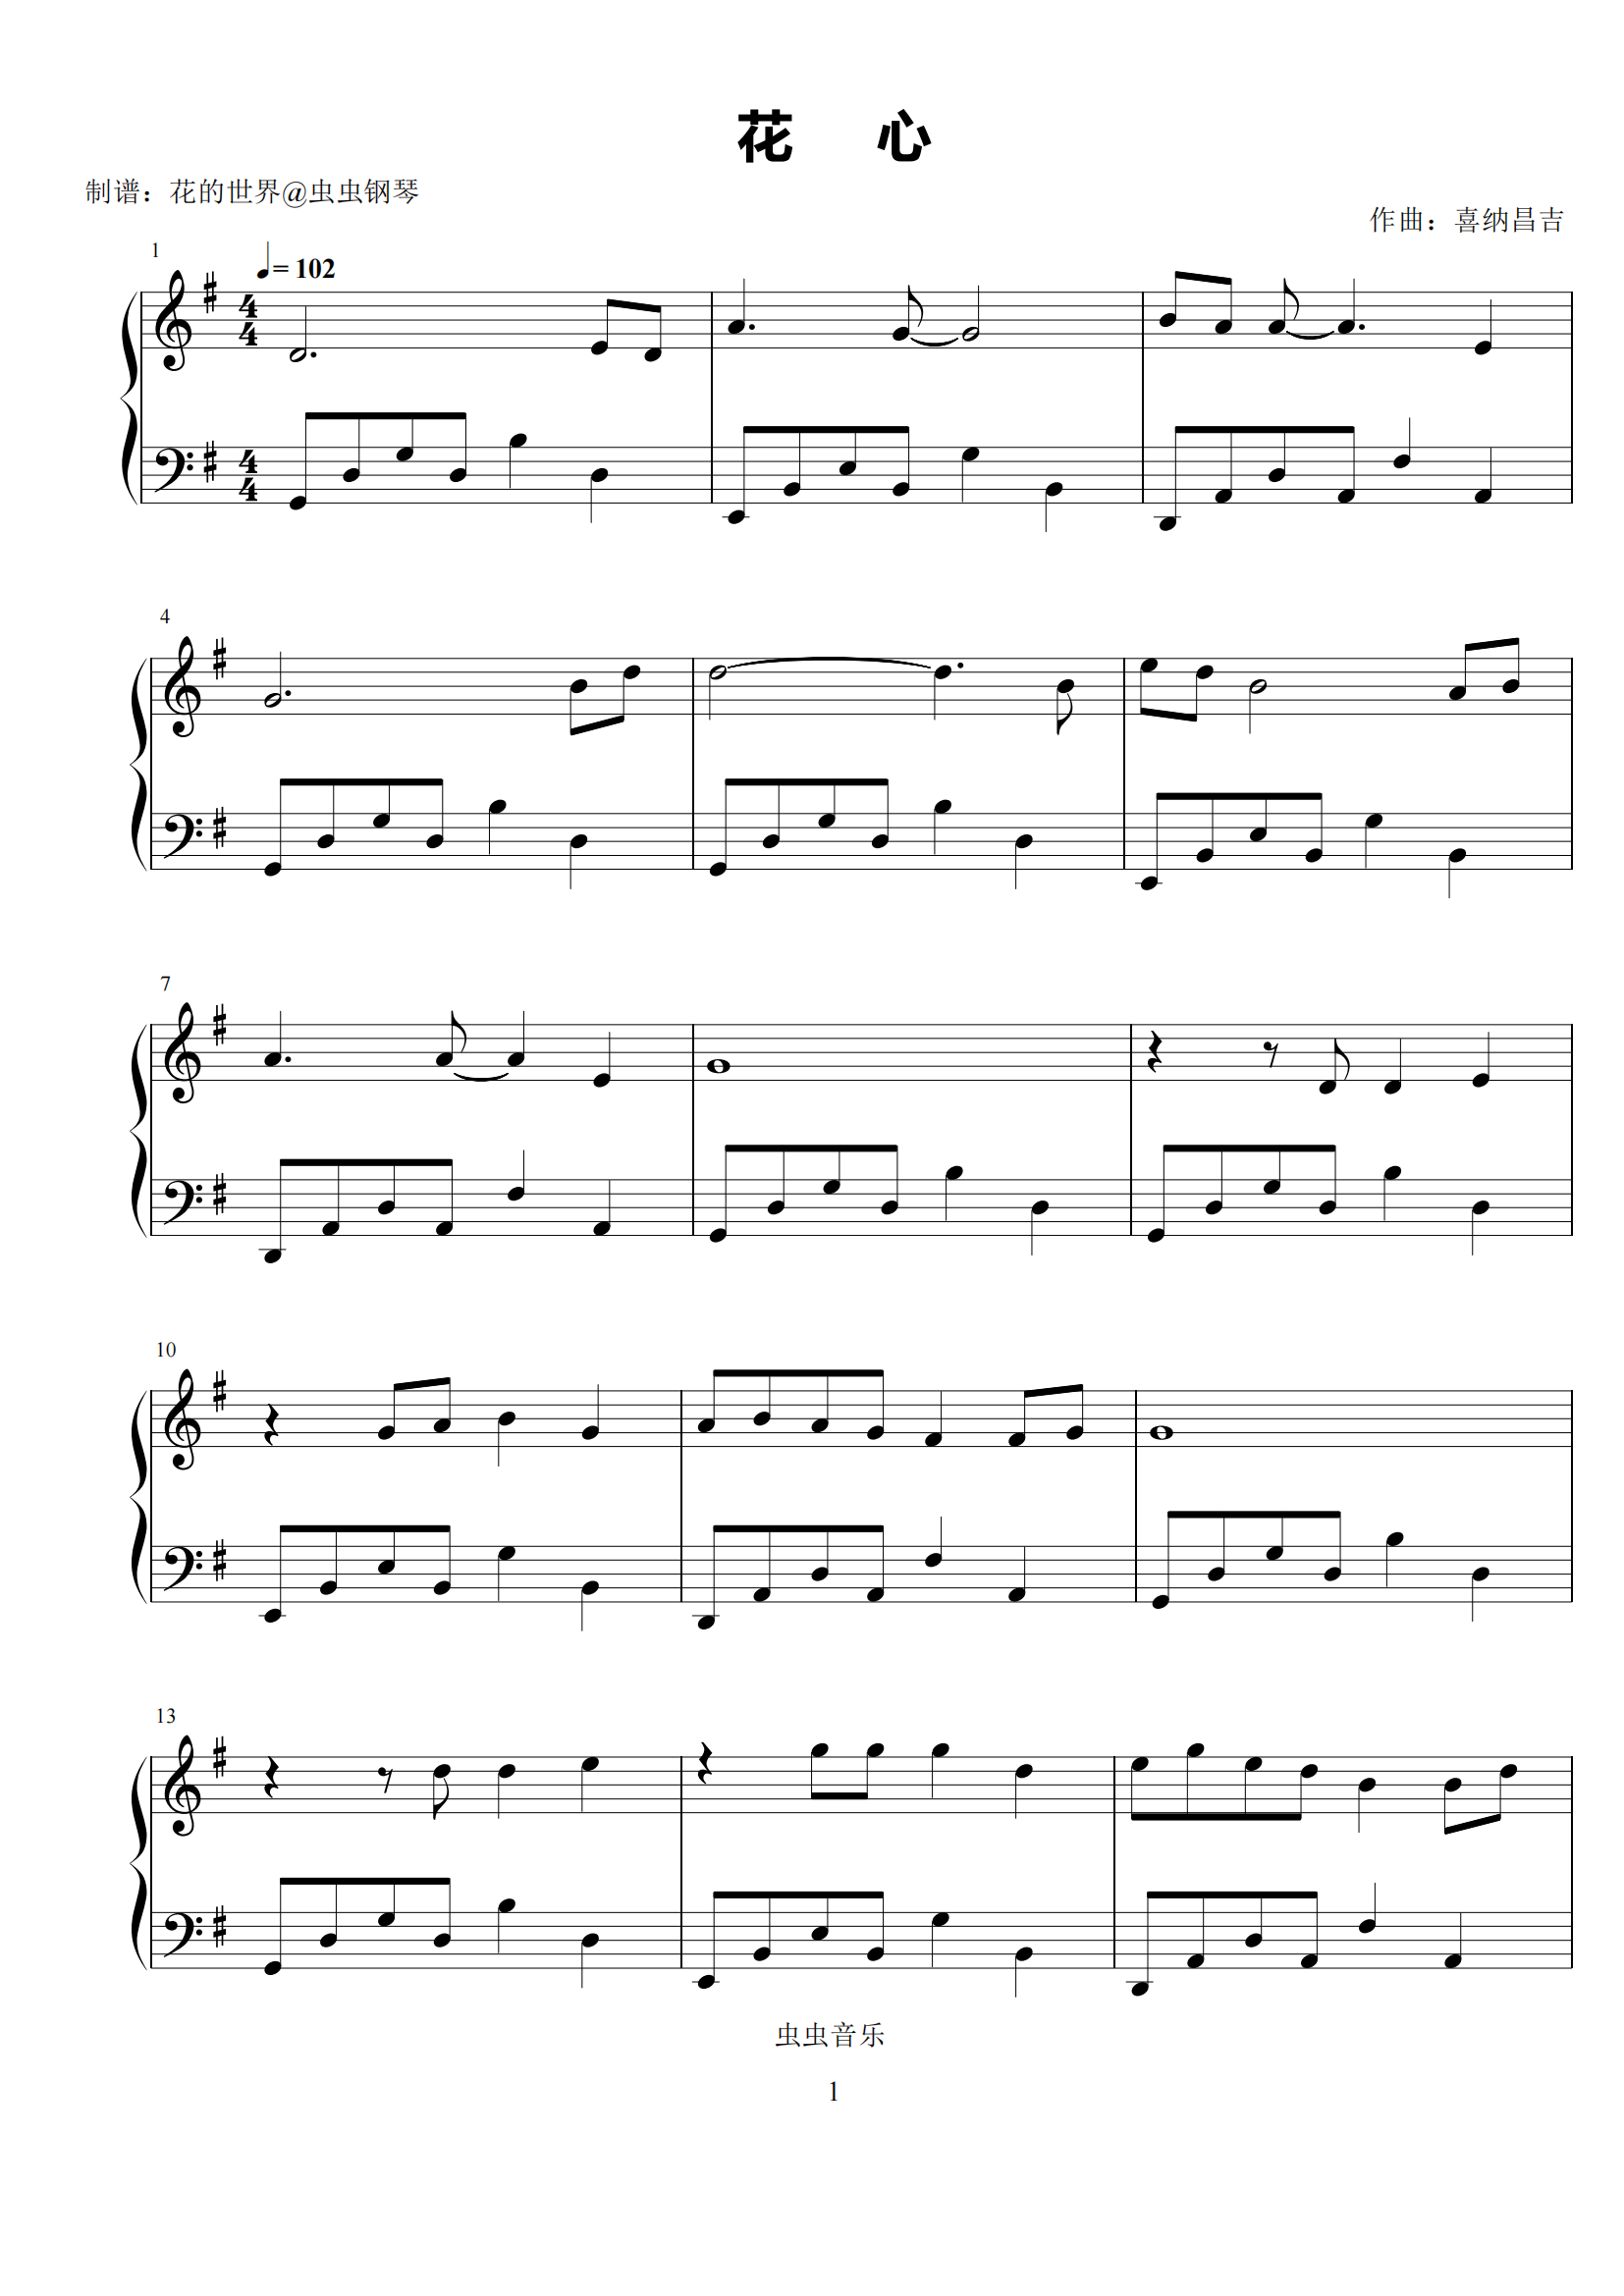 《花心》简单钢琴谱 - 周华健左手右手慢速版 - 简易入门版 - 钢琴简谱